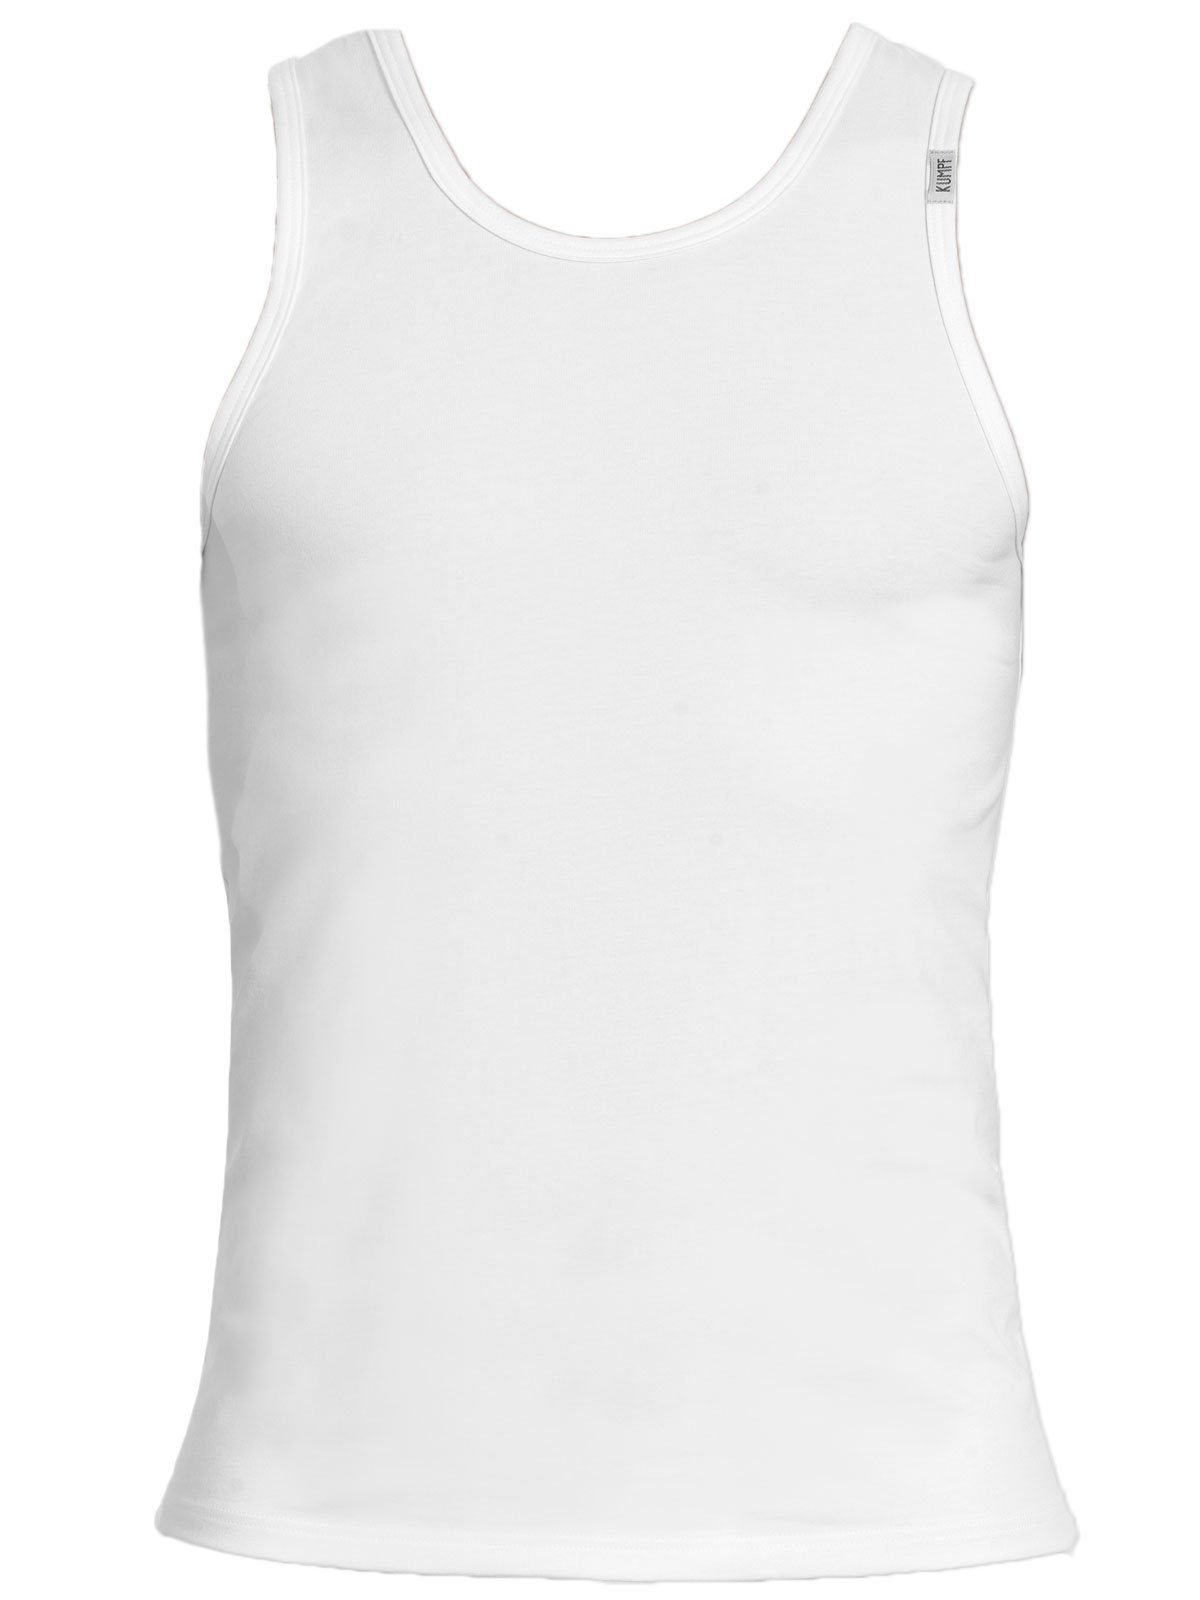 hohe Achselhemd 2-St) KUMPF Unterhemd (Spar-Set, Herren Cotton Markenqualität Bio 2er weiss Sparpack schwarz